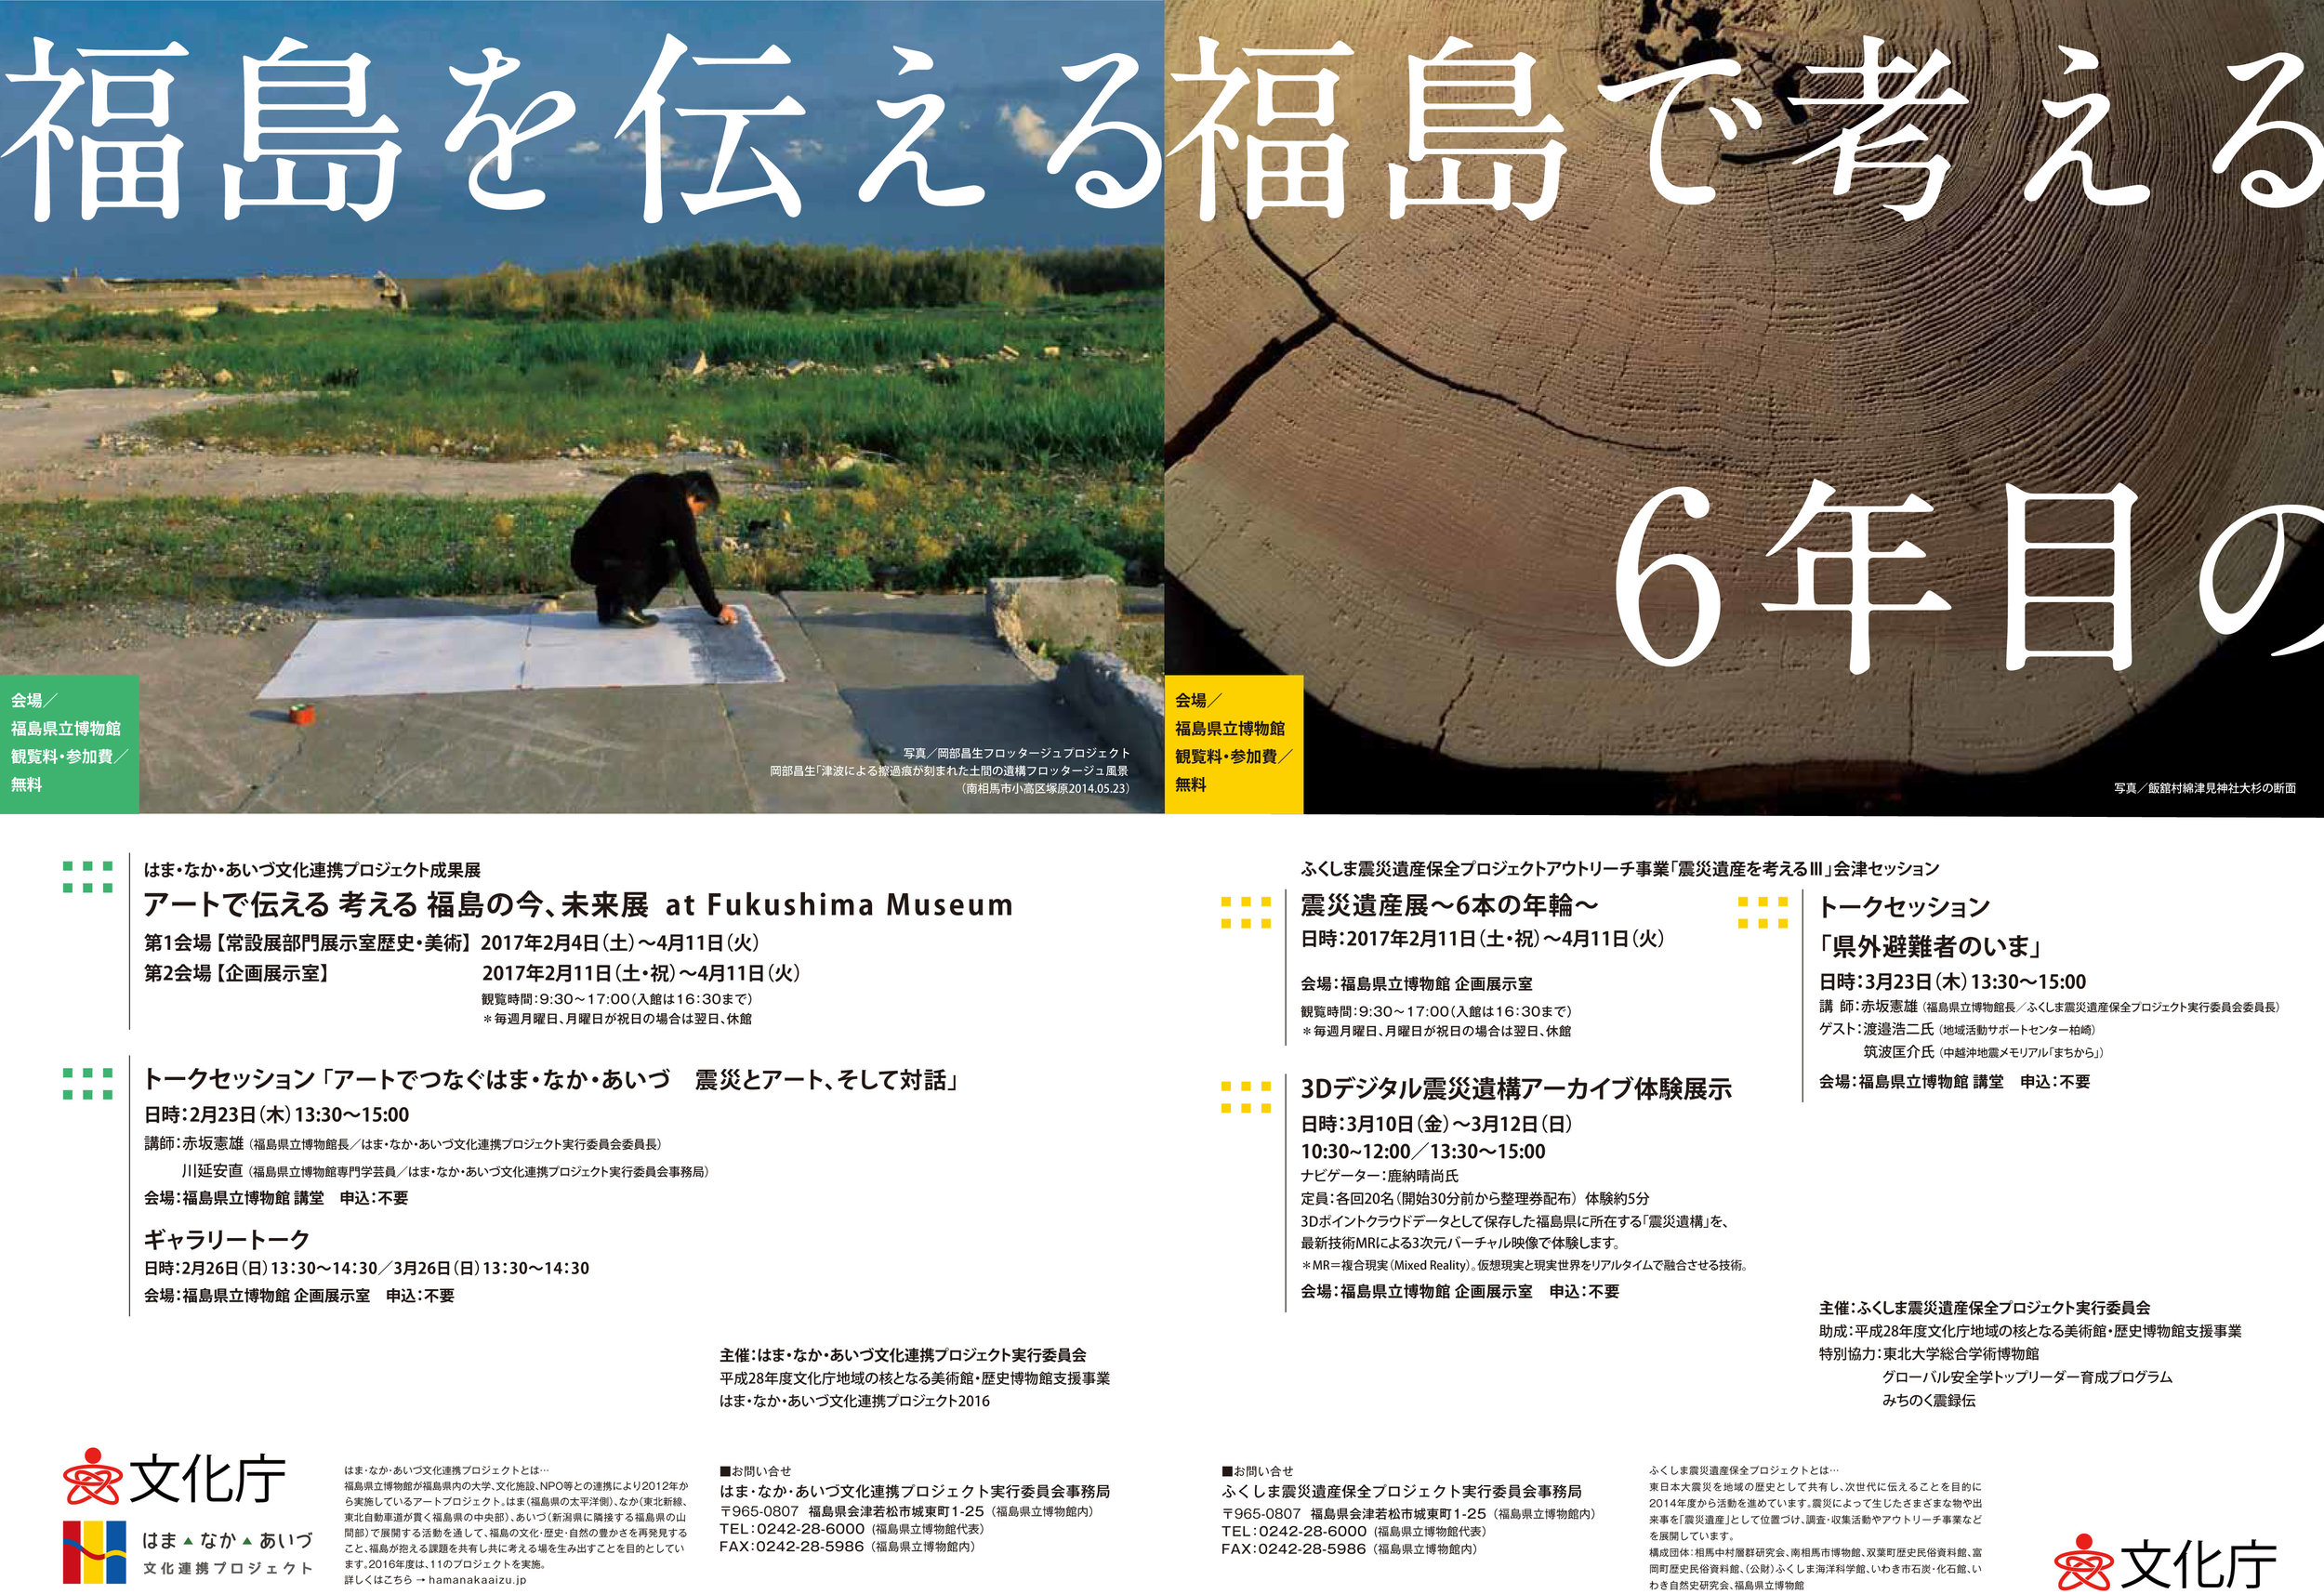 アートで伝える福島の今、未来展 at Fukushima Museum 